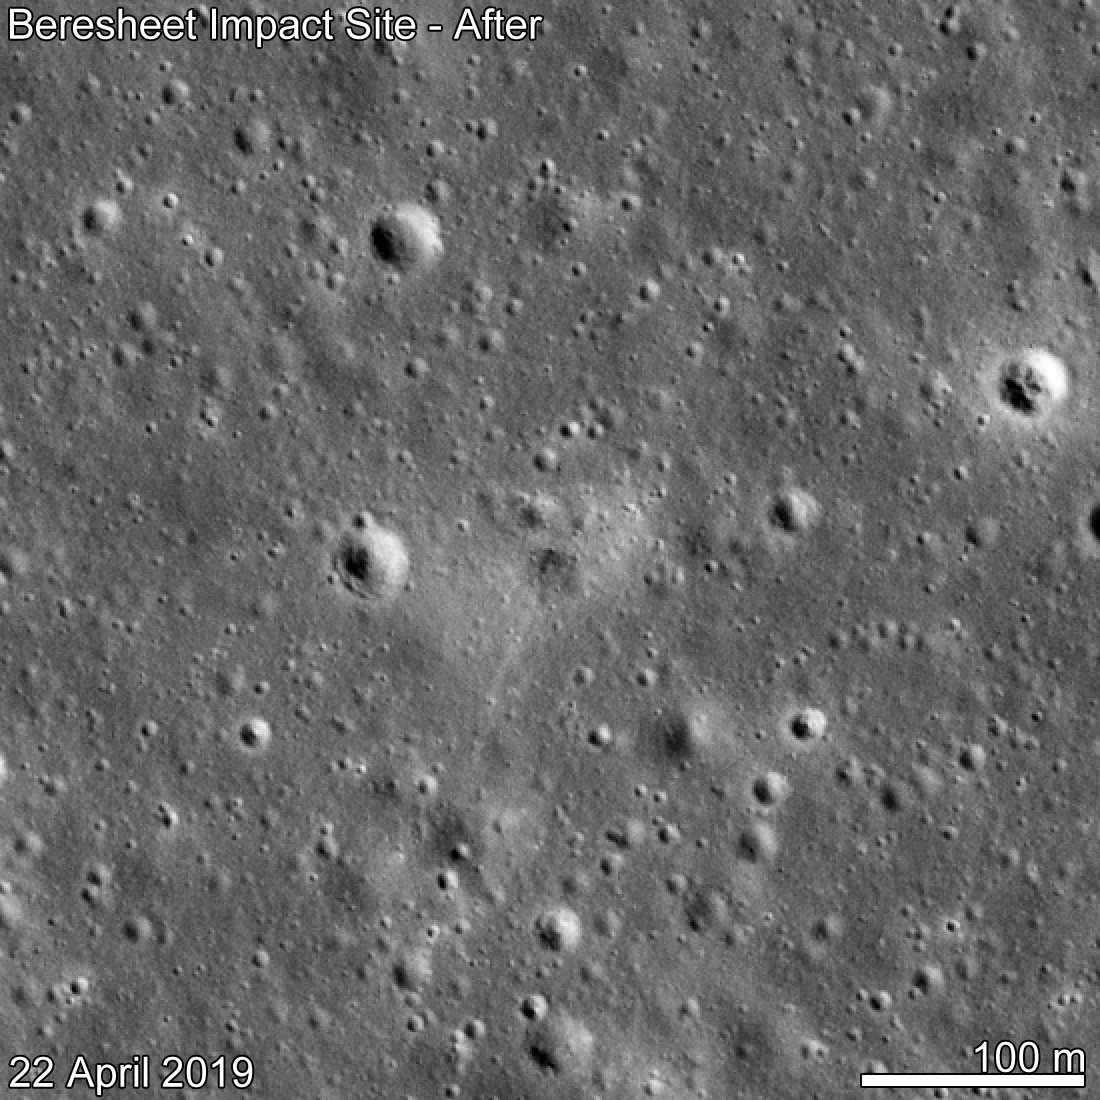 Cette image prise par Lunar Reconnaissance Orbiter (LRO) montre le site du crash de la sonde Bereshit sur la Lune. On pourrait y trouver des tardigrades vivants. © Nasa, GSFC, Arizona State University, Wikipedia, Domaine public